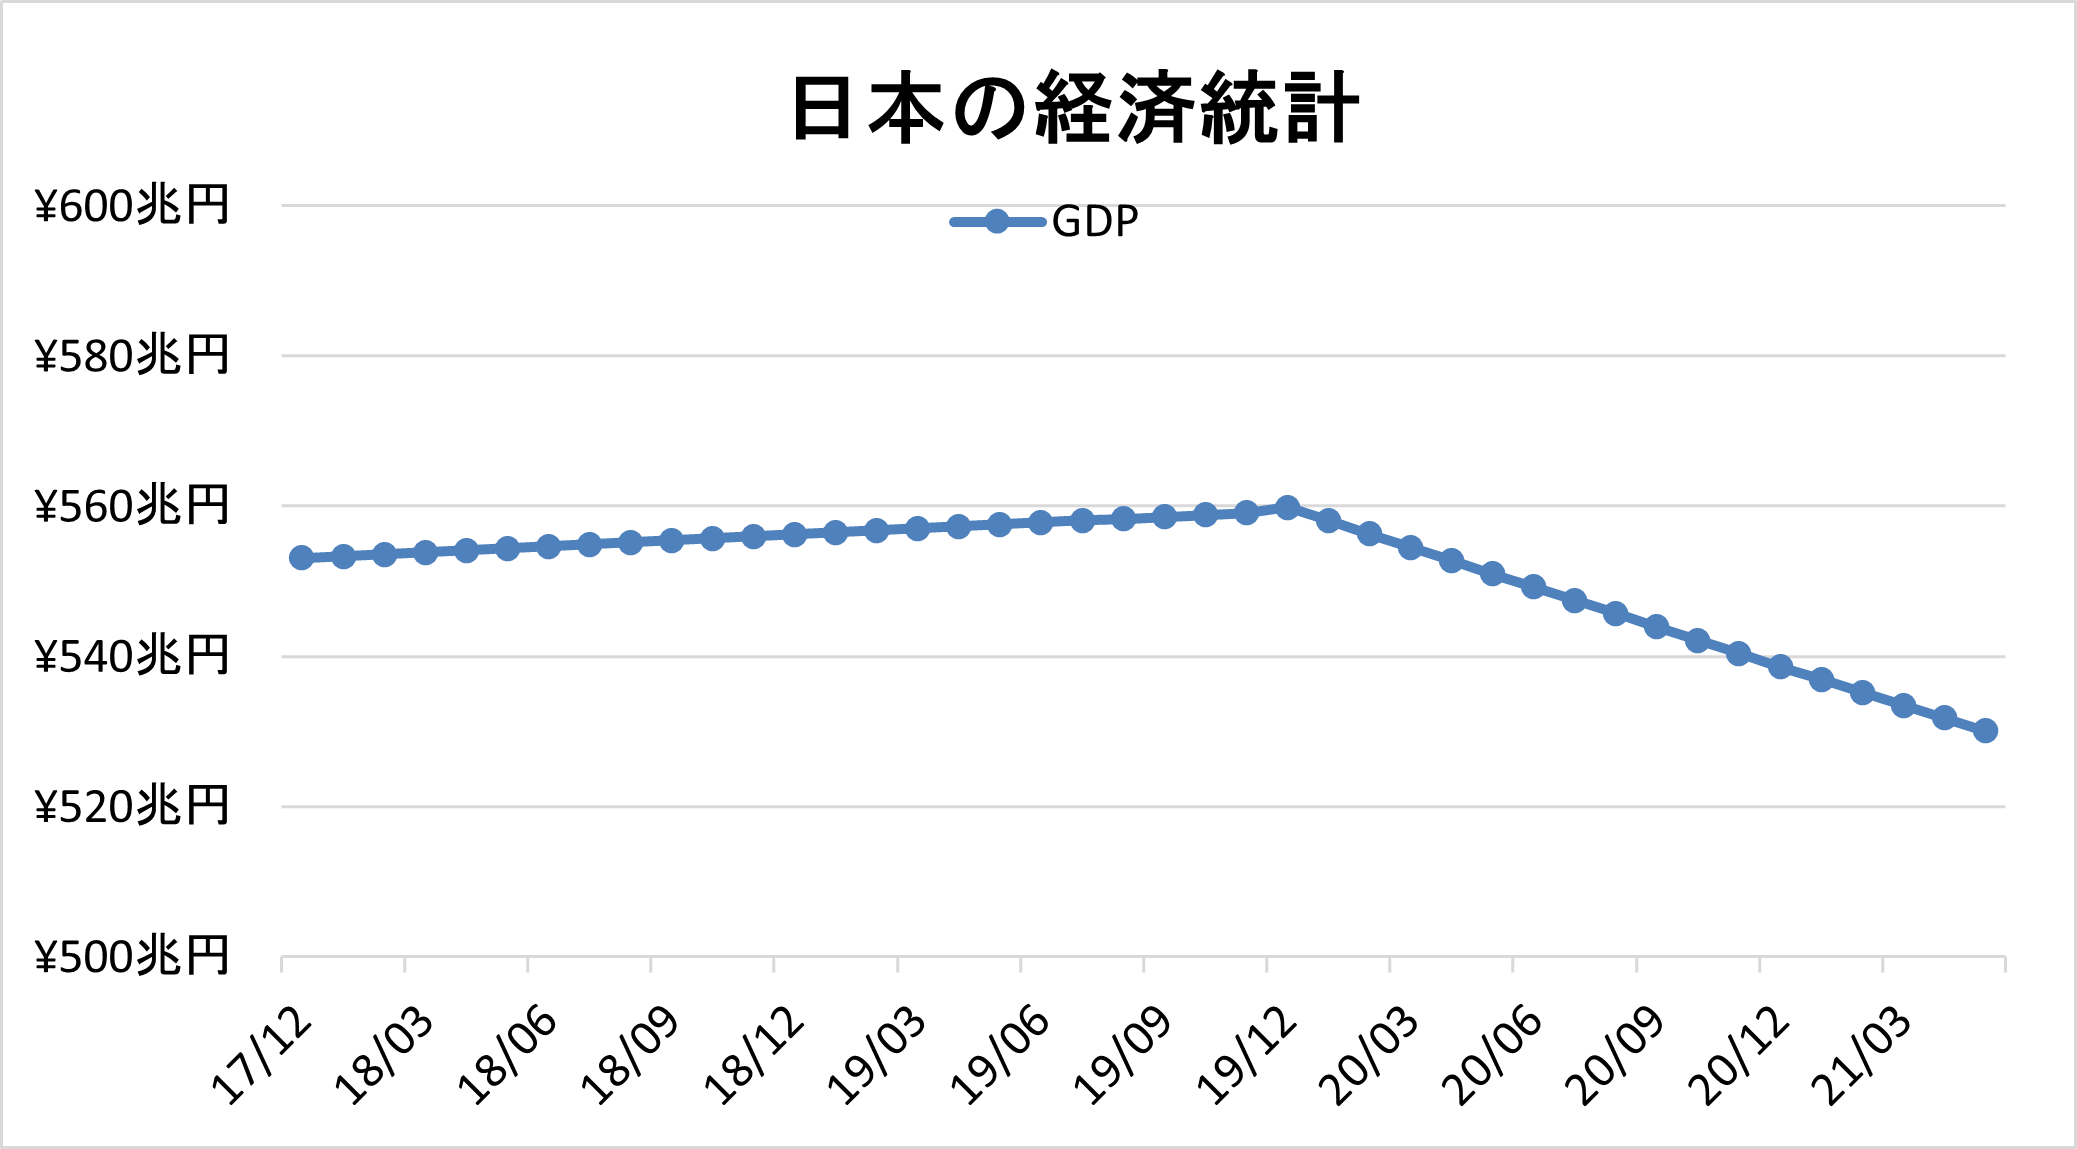 日本のGDP